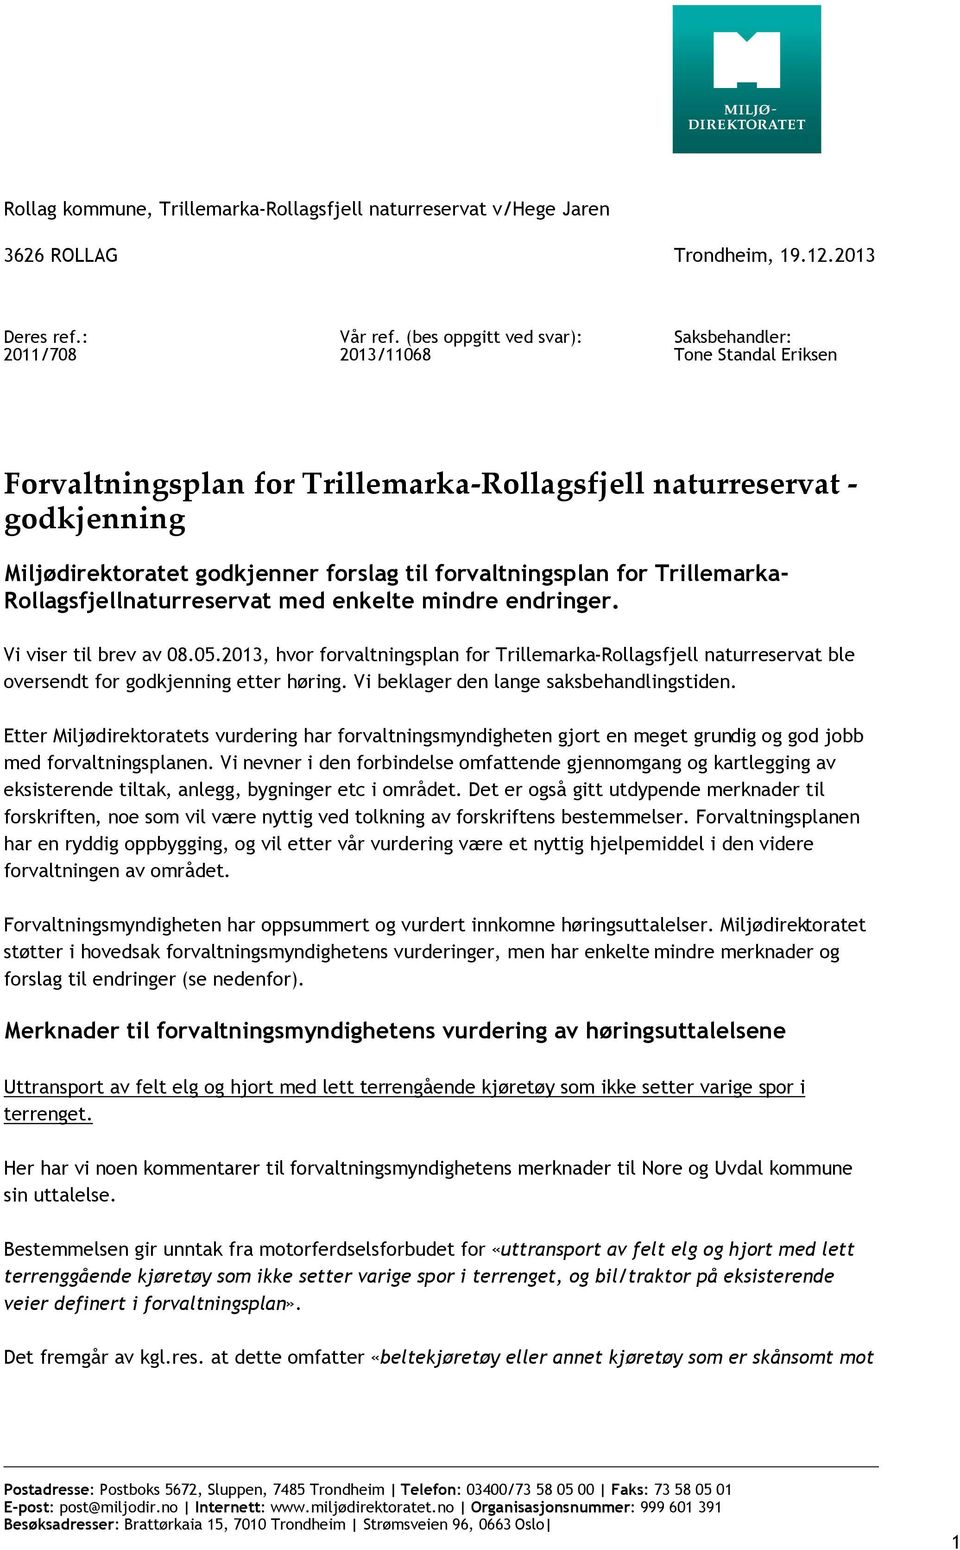 forvaltningsplan for Trillemarka- Rollagsfjellnaturreservat med enkelte mindre endringer. Vi viser til brev av 08.05.